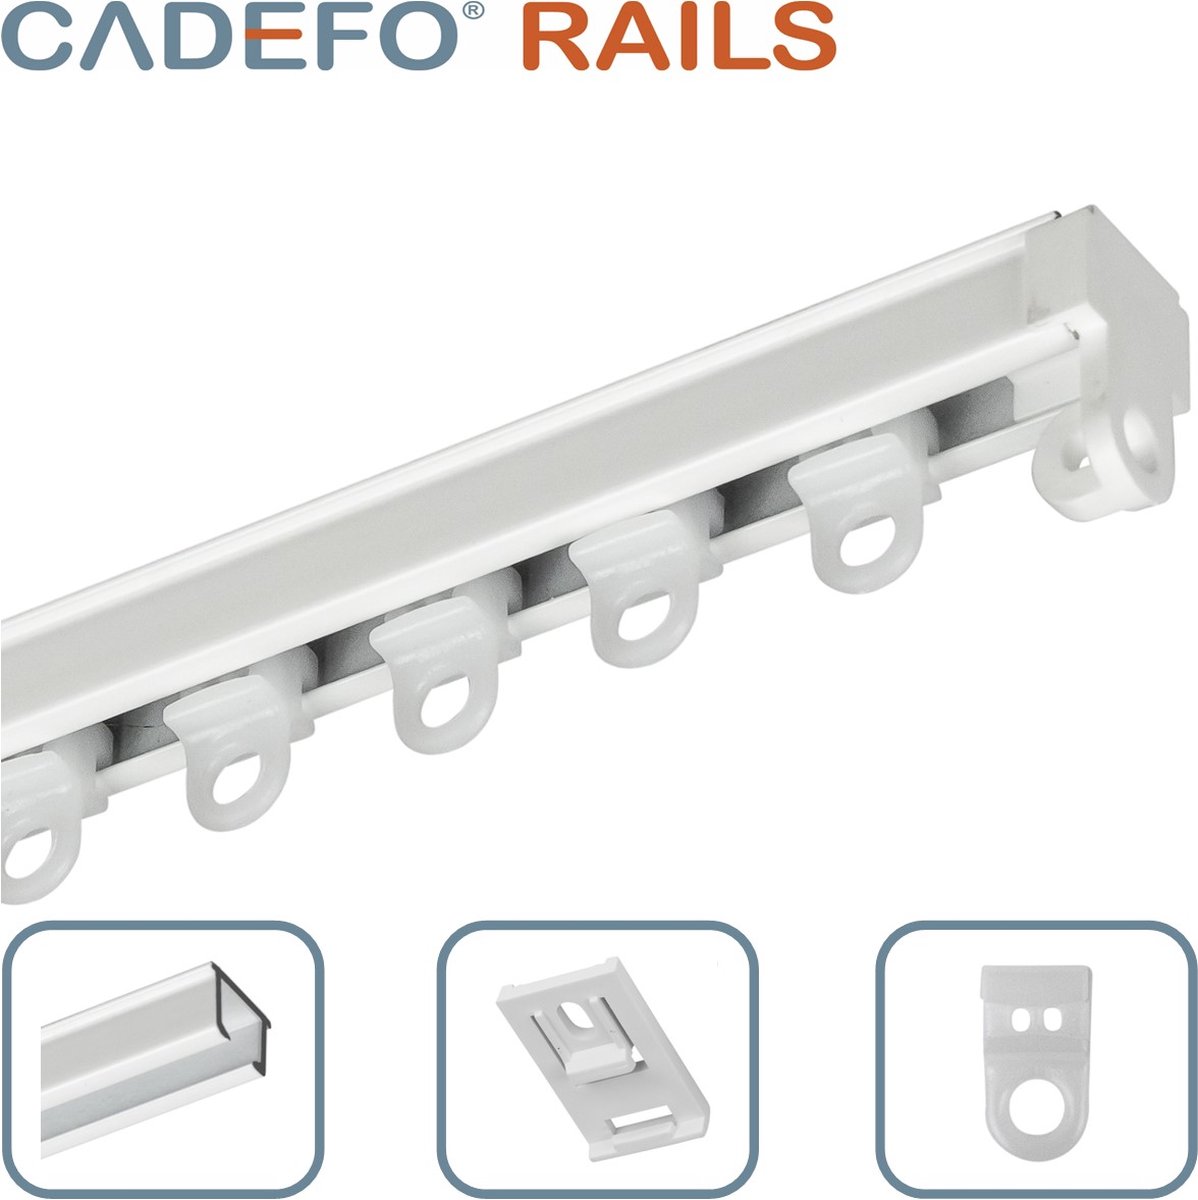 CADEFO RAILS (551 - 600 cm) Gordijnrails - Compleet op maat! - UIT 1 STUK - Leverbaar tot 6 meter - Plafondbevestiging - Lengte 579 cm